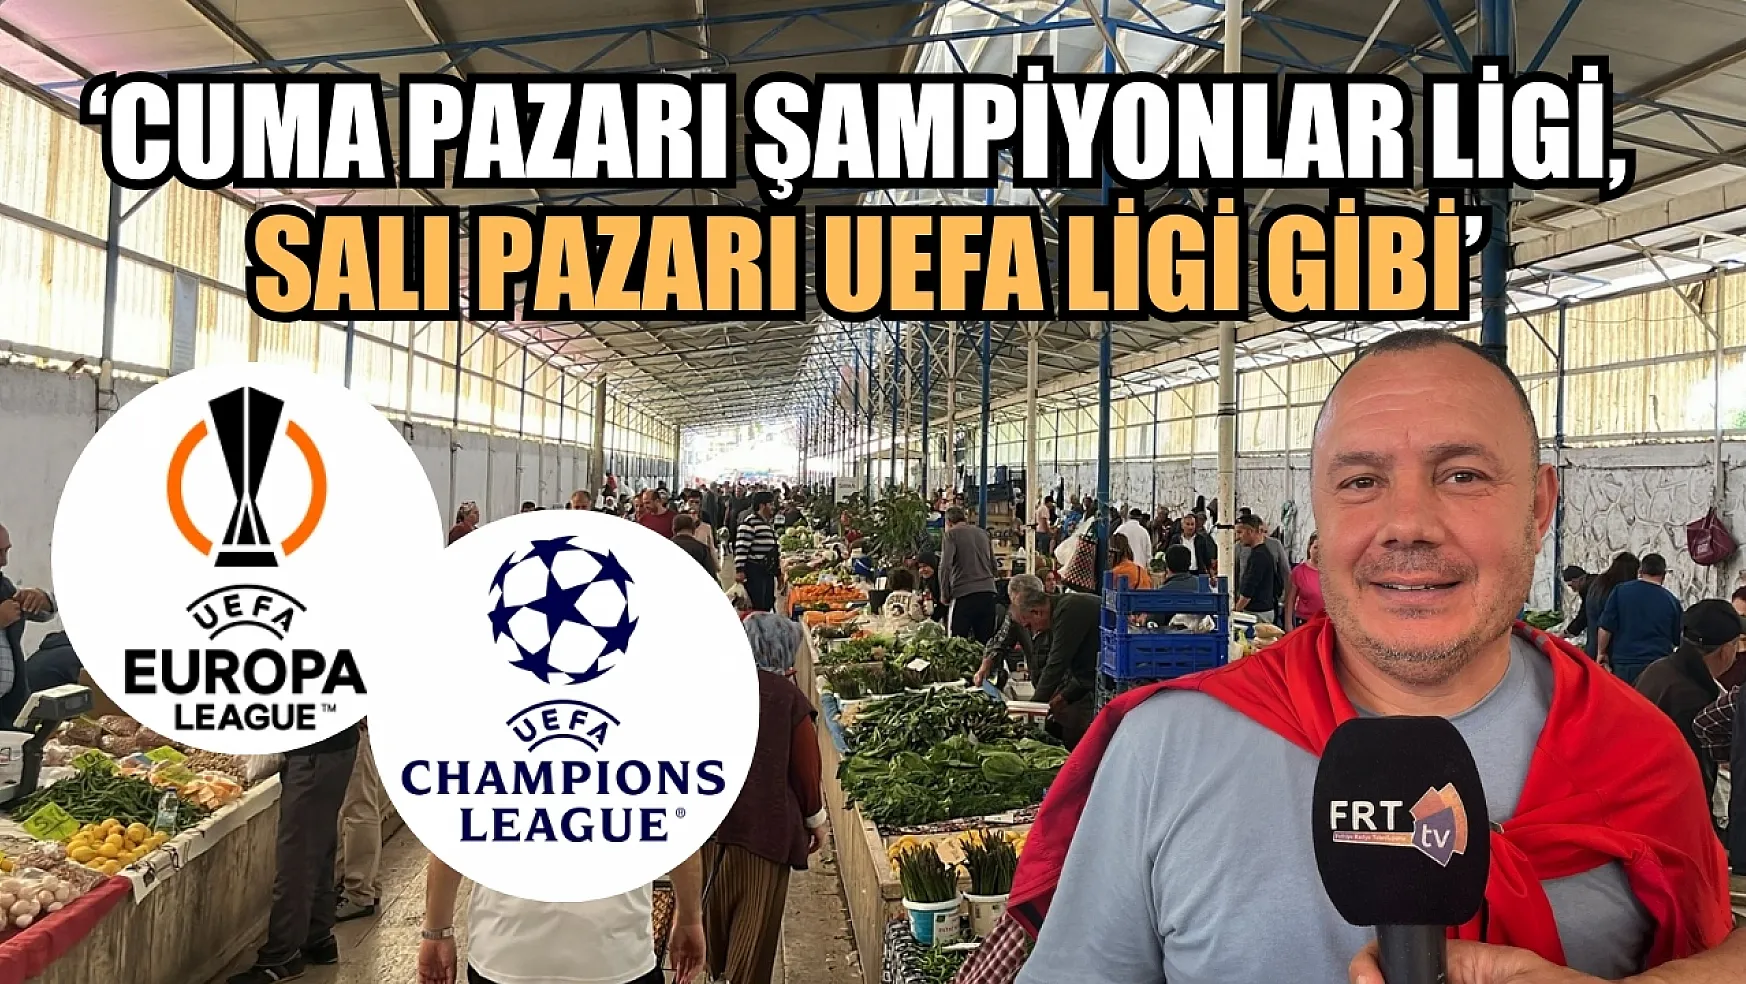 'Fethiye Cuma Pazarı Şampiyonlar Ligi, Salı Pazarı UEFA Ligi Gibi'